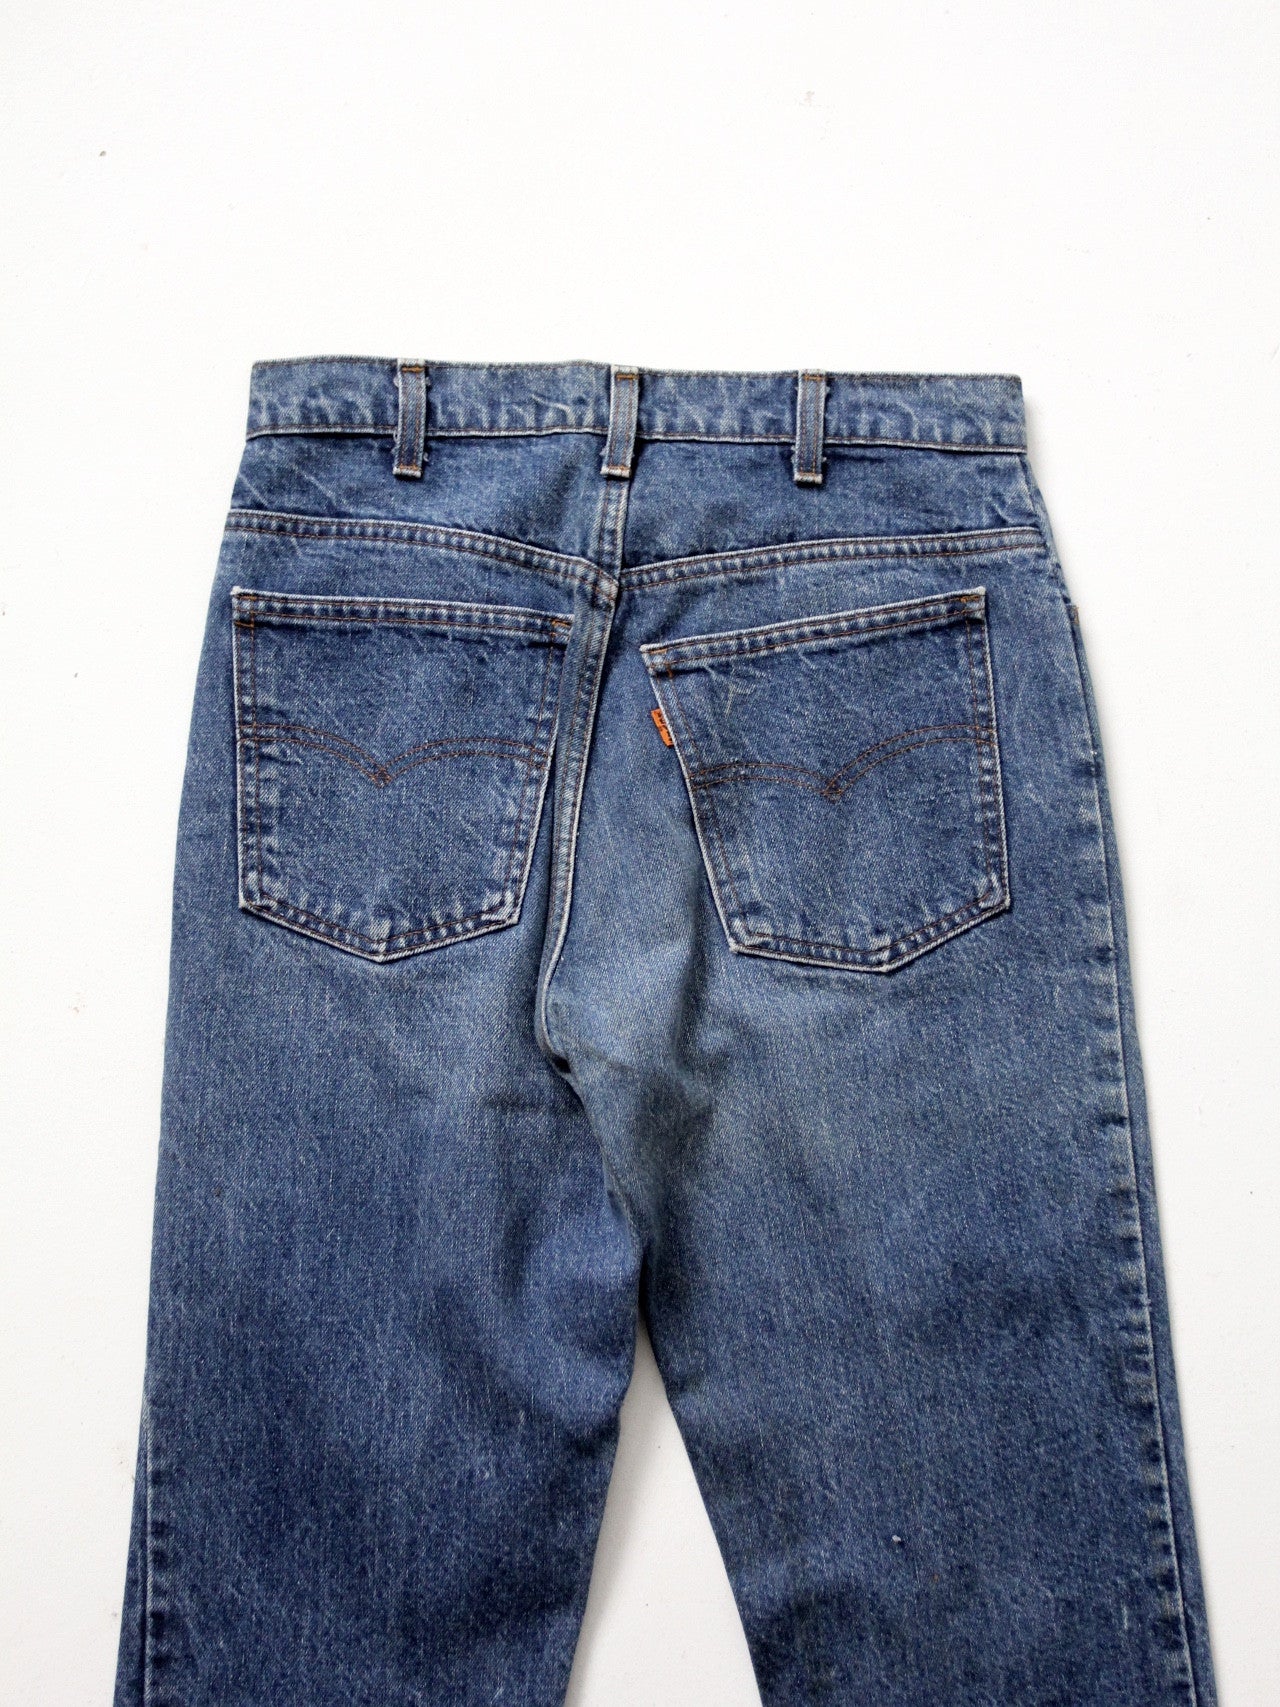 vintage 70s Levis 646 denim jeans, 28 x 32 – 86 Vintage